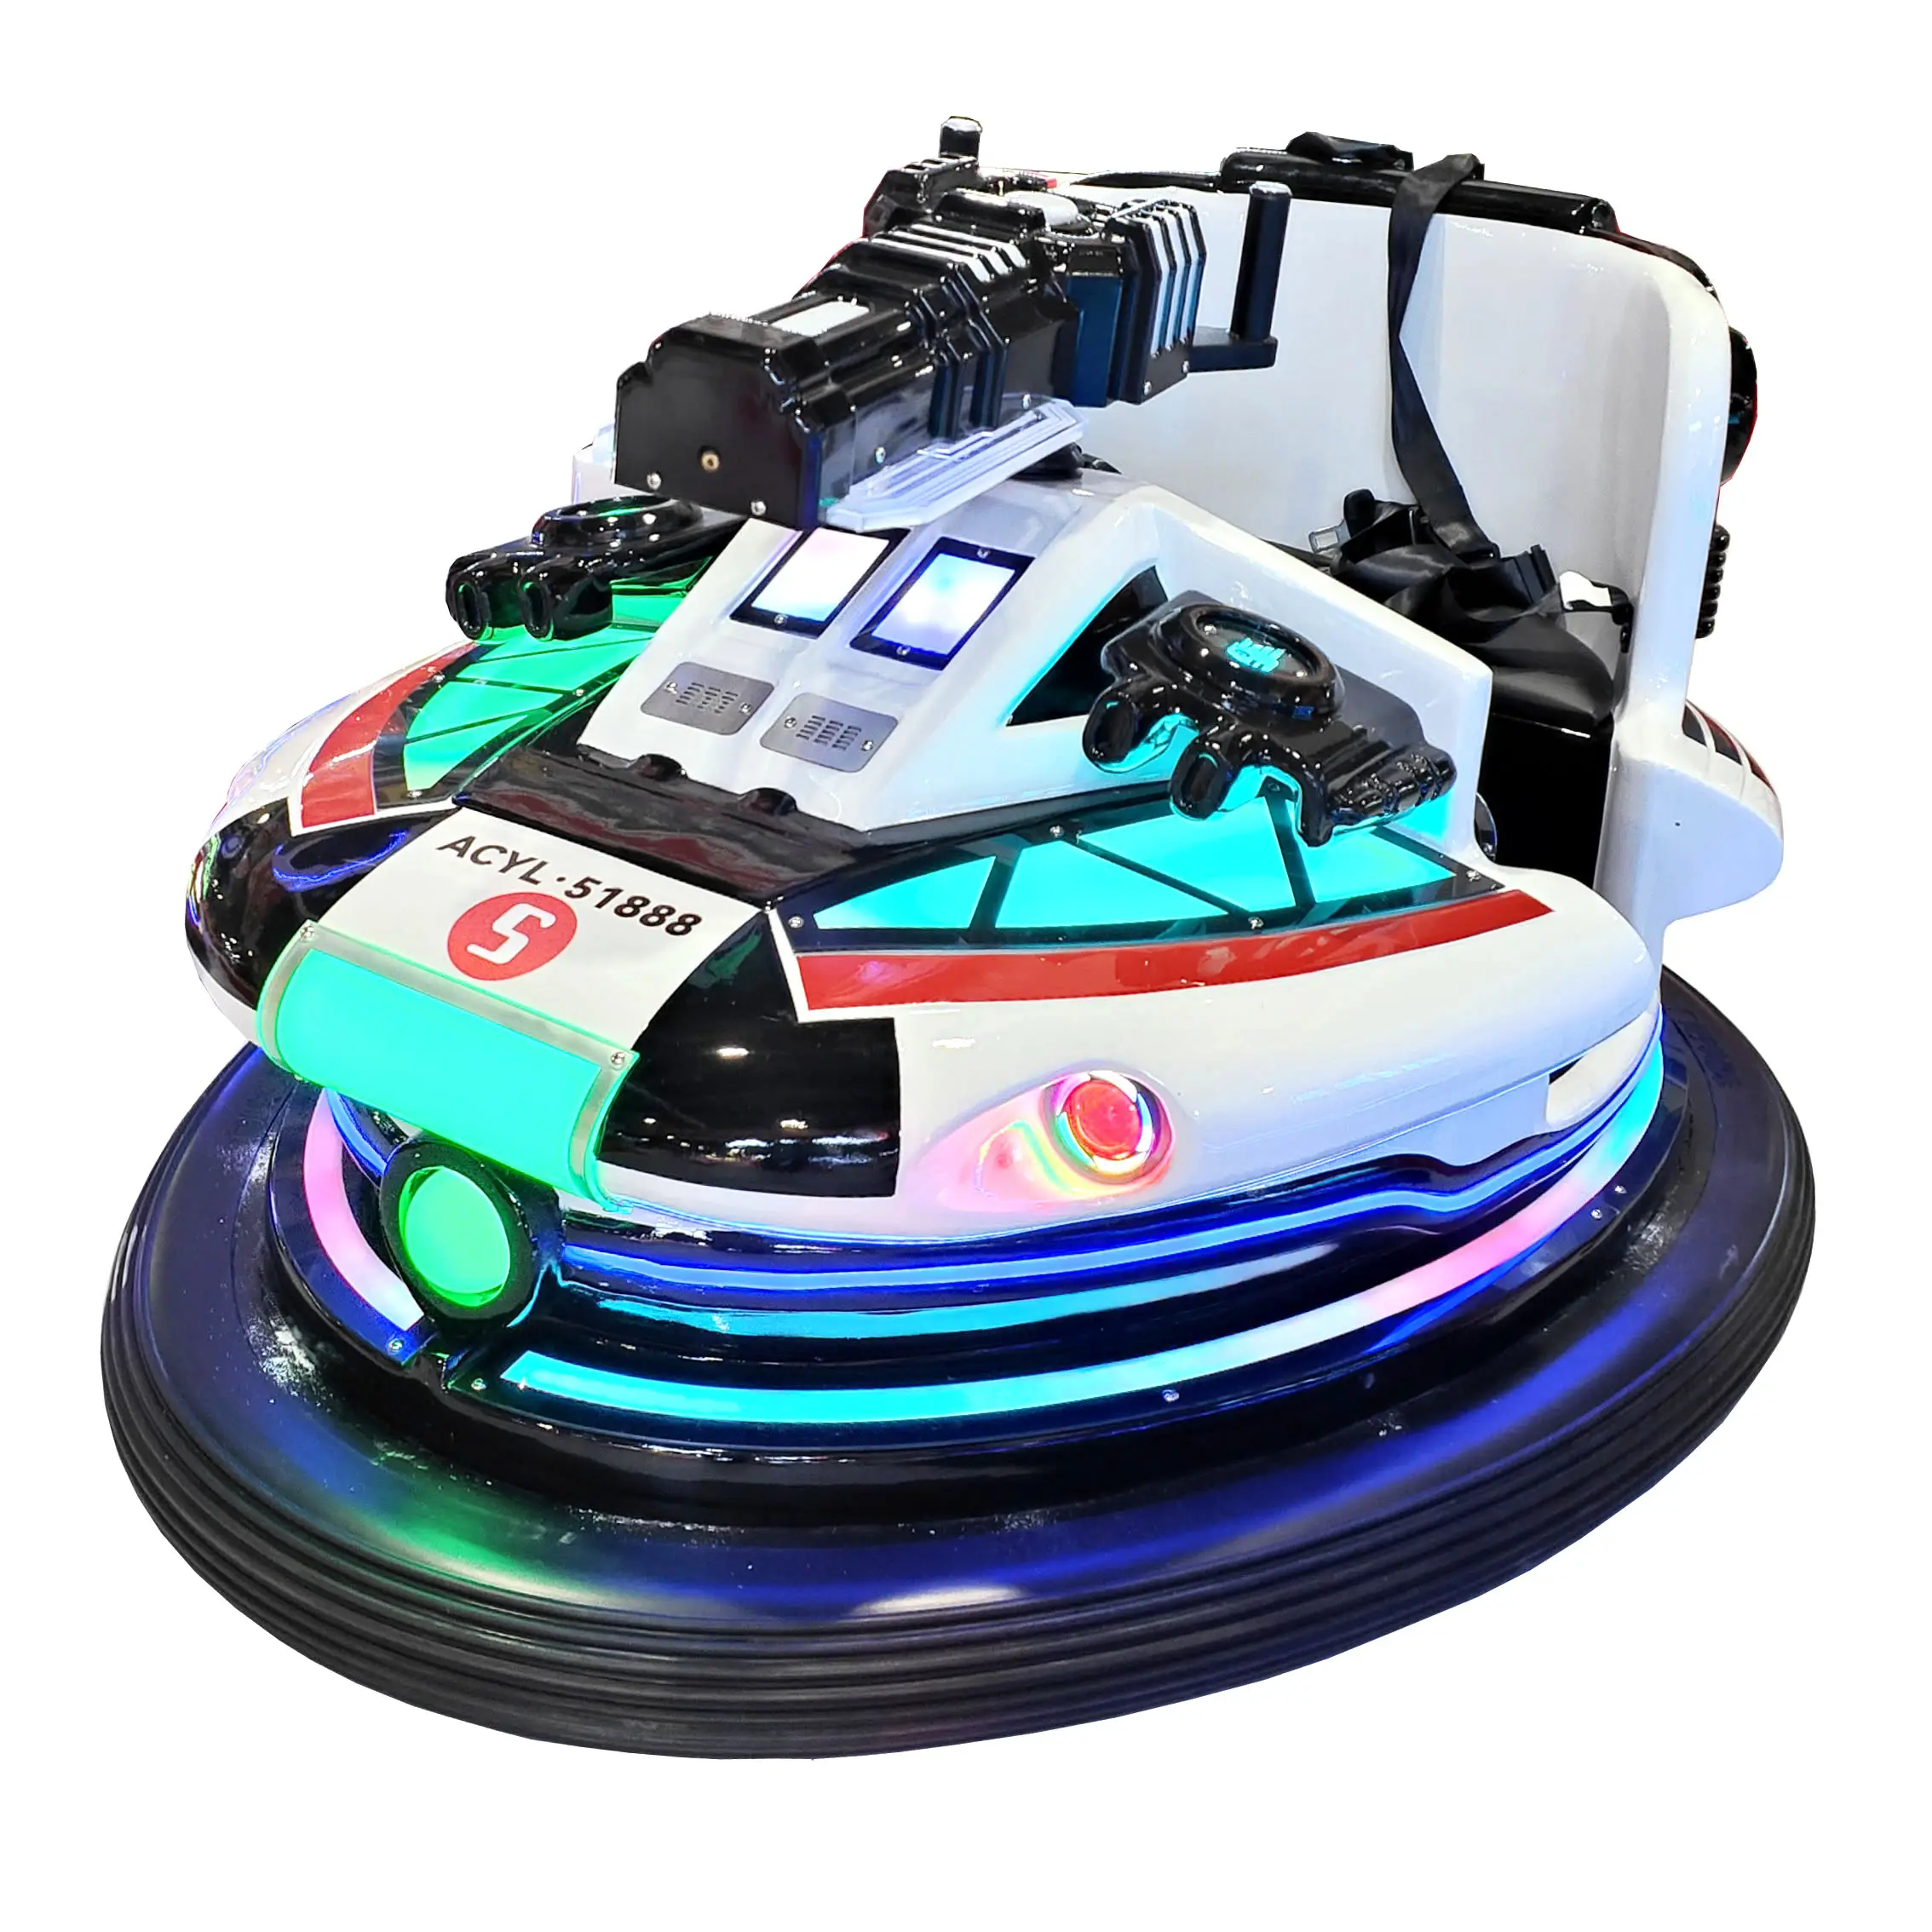 سيارة كهربائية ممتعة ومثيرة Anchi Galaxy Warship Battle لركوب السيارات والعاب الواقع الافتراضي للاطفال سيارات كهربائية بمحرك